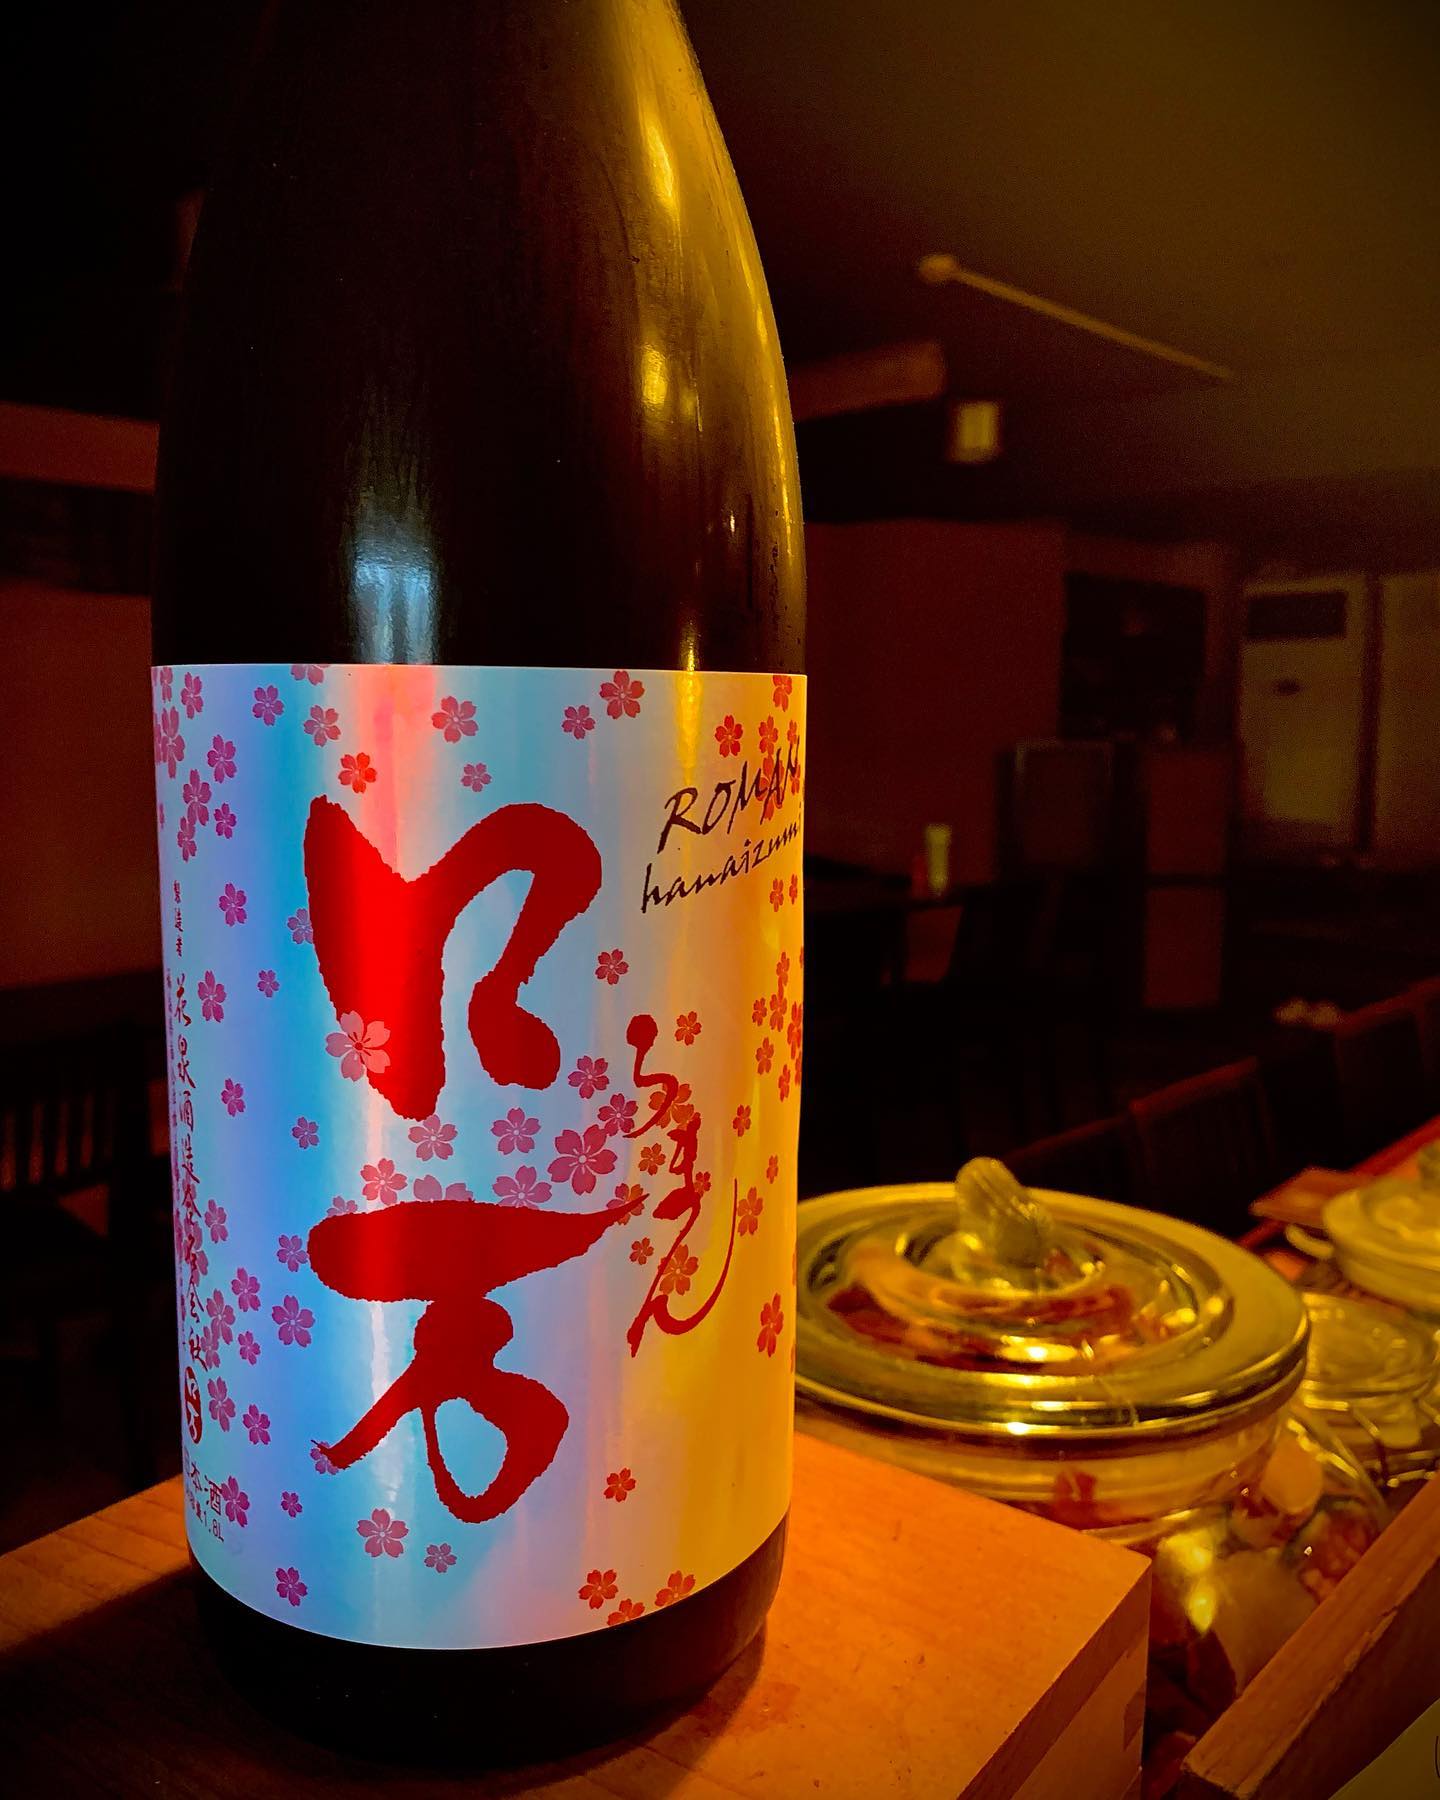 今日の日本酒紹介です。
「ロ万(ロマン)」
このロ万はみてわかる通り春の桜を模して作られた日本酒になります。
爽やかな甘さこの春の時にはピッタリですね︎
    # #